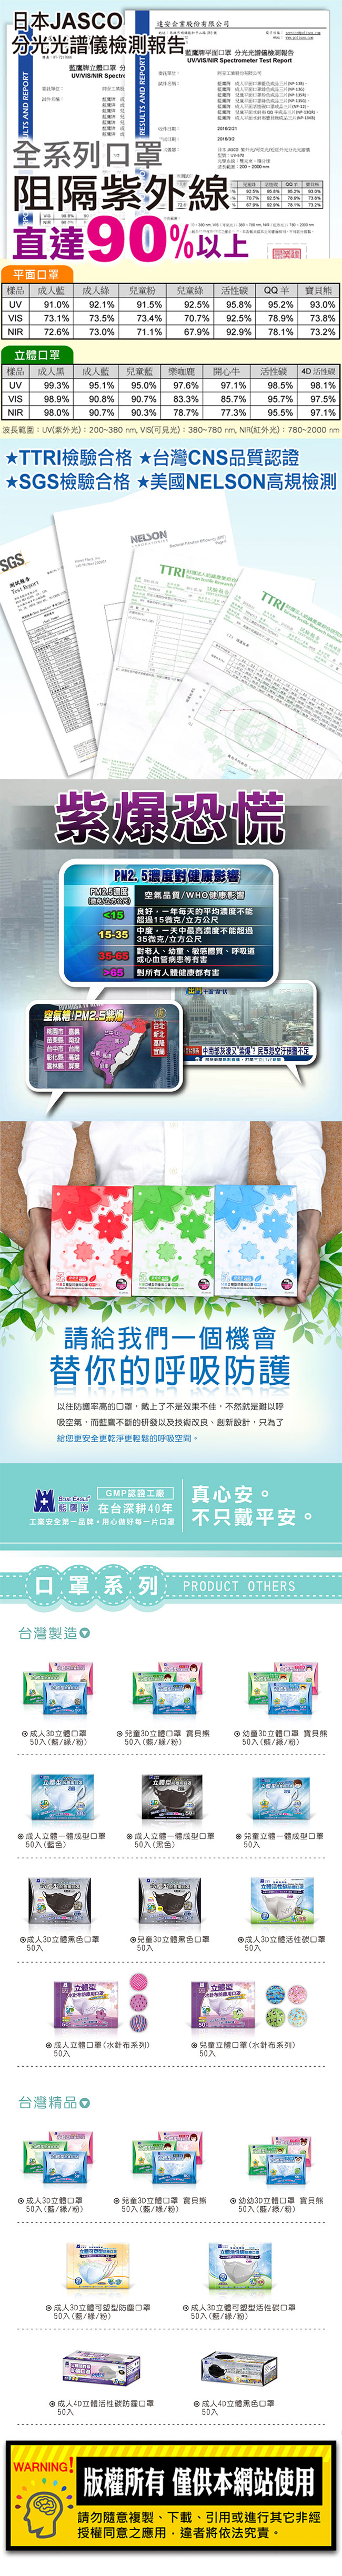 藍鷹牌 台灣製造 四層式無毒油墨水針布立體兒童口罩 50入x3盒